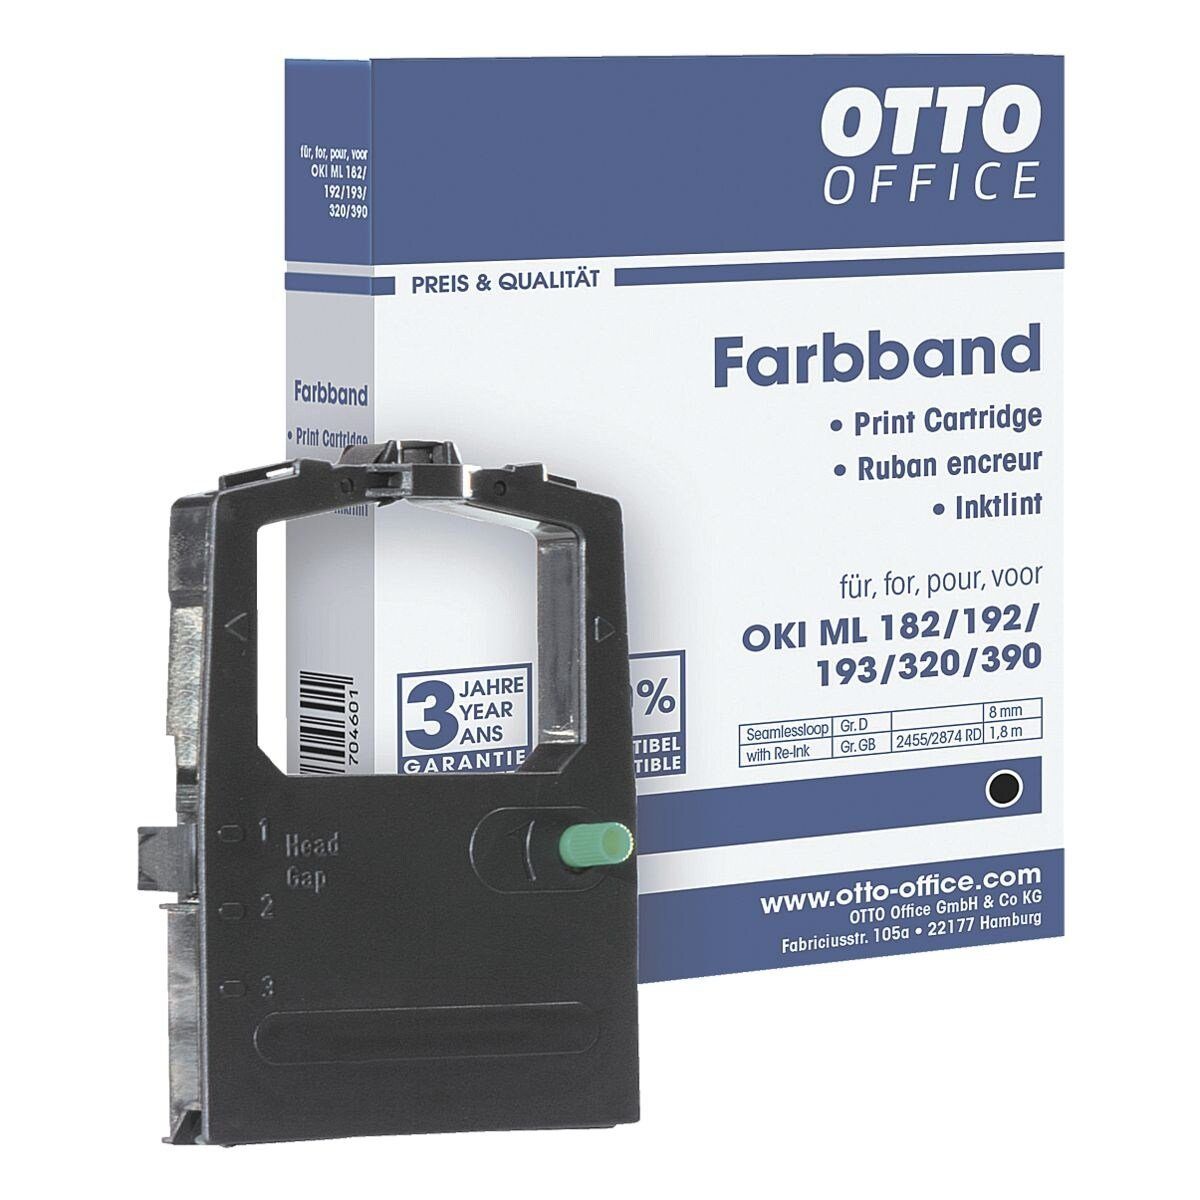 Otto Office Office Druckerband OKI ML, Nadeldrucker, Farbband schwarz für